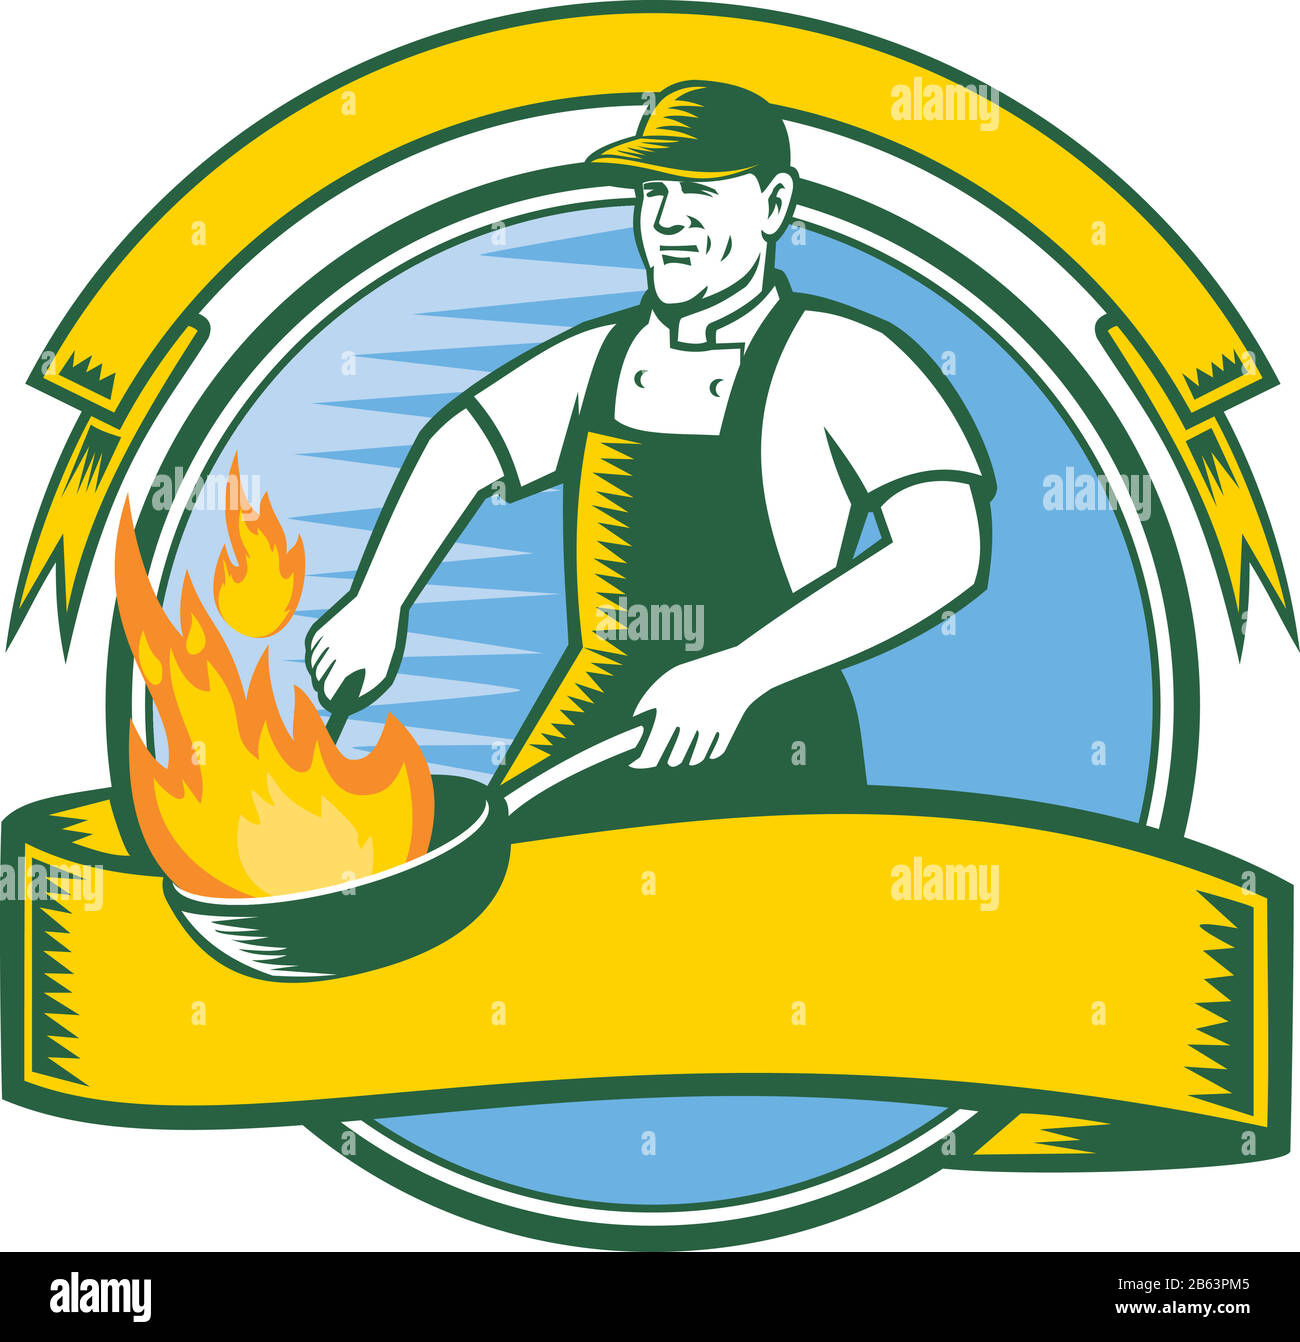 Icona Mascot illustrazione di un cuoco o chef cucina con flaming pan o wok set all'interno del cerchio con nastro e banner visto di fronte in stile retrò o Illustrazione Vettoriale